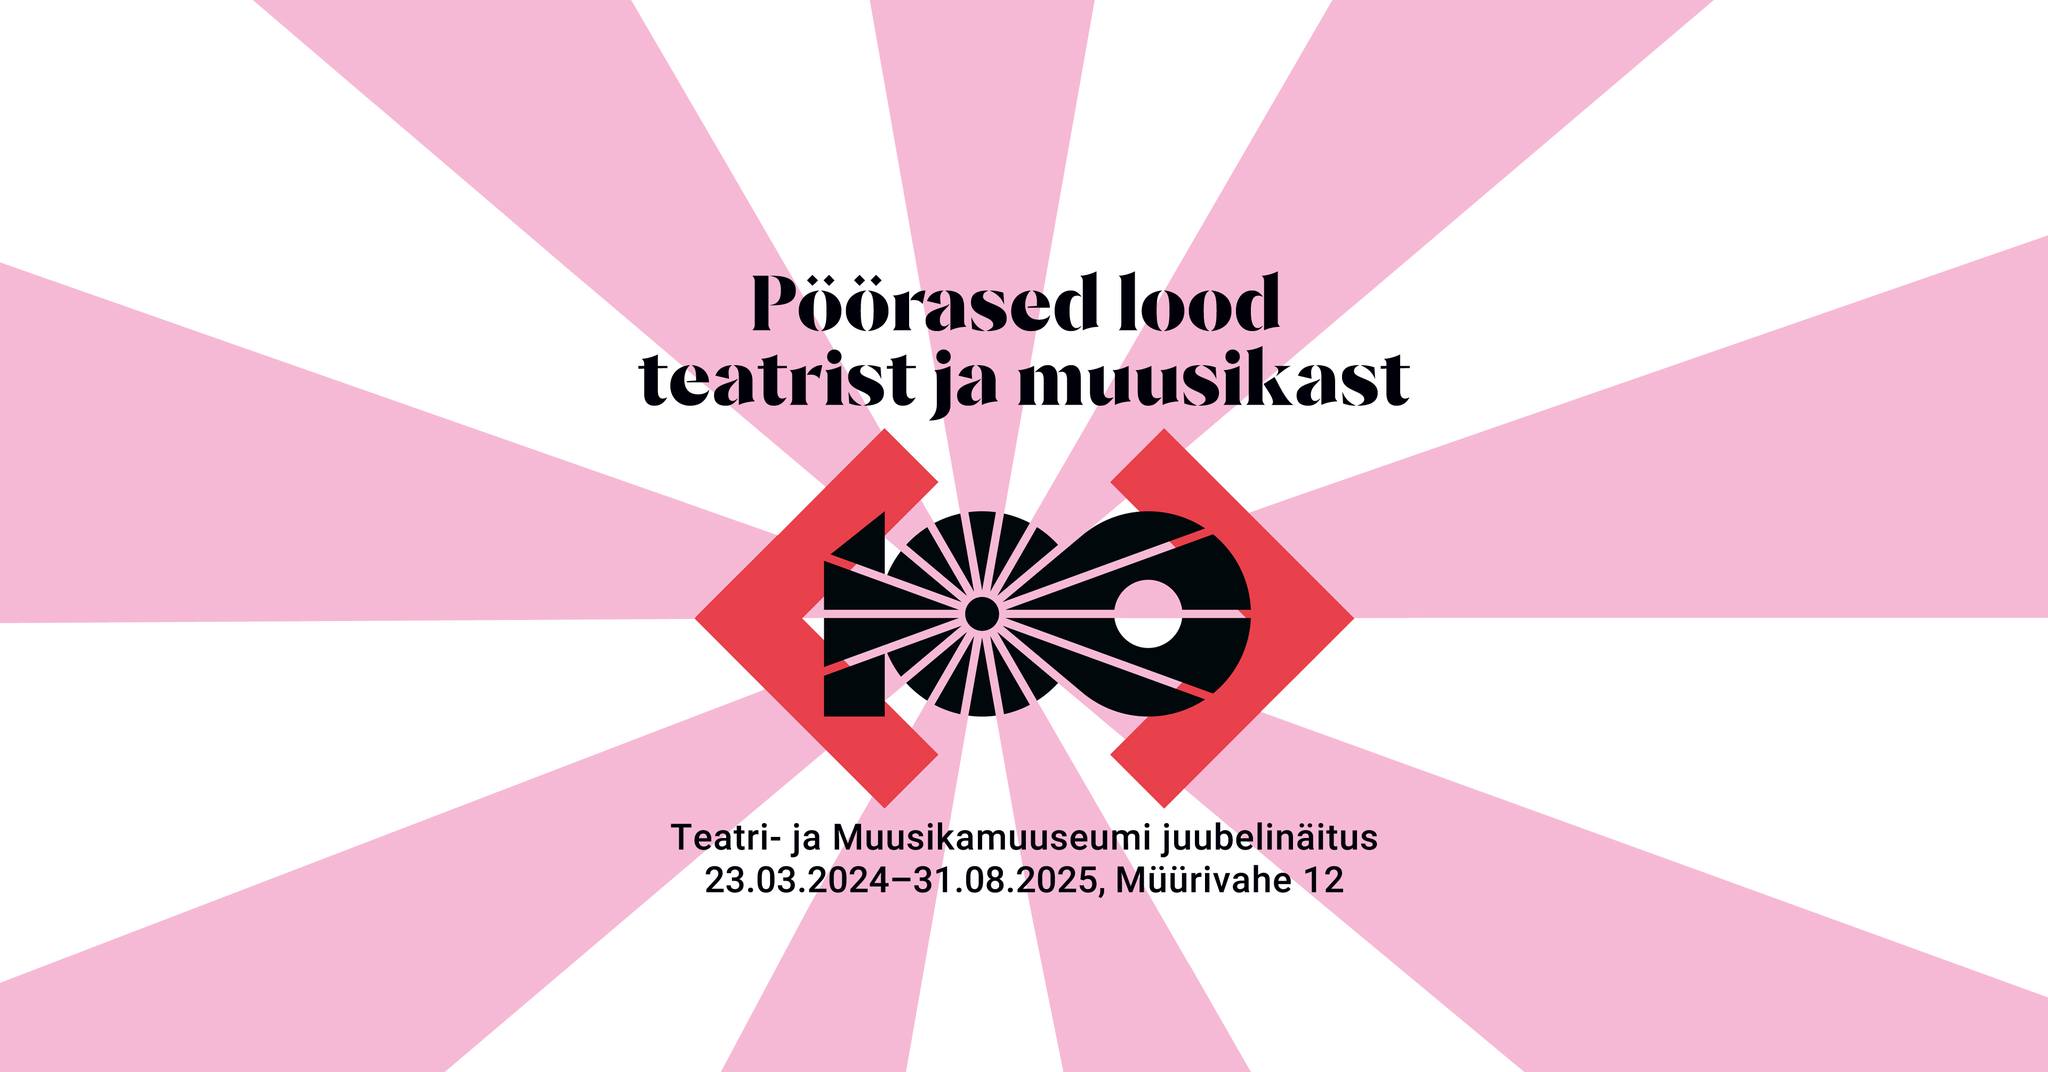 Știri muzicale |  Centrul de informare muzicală din Estonia